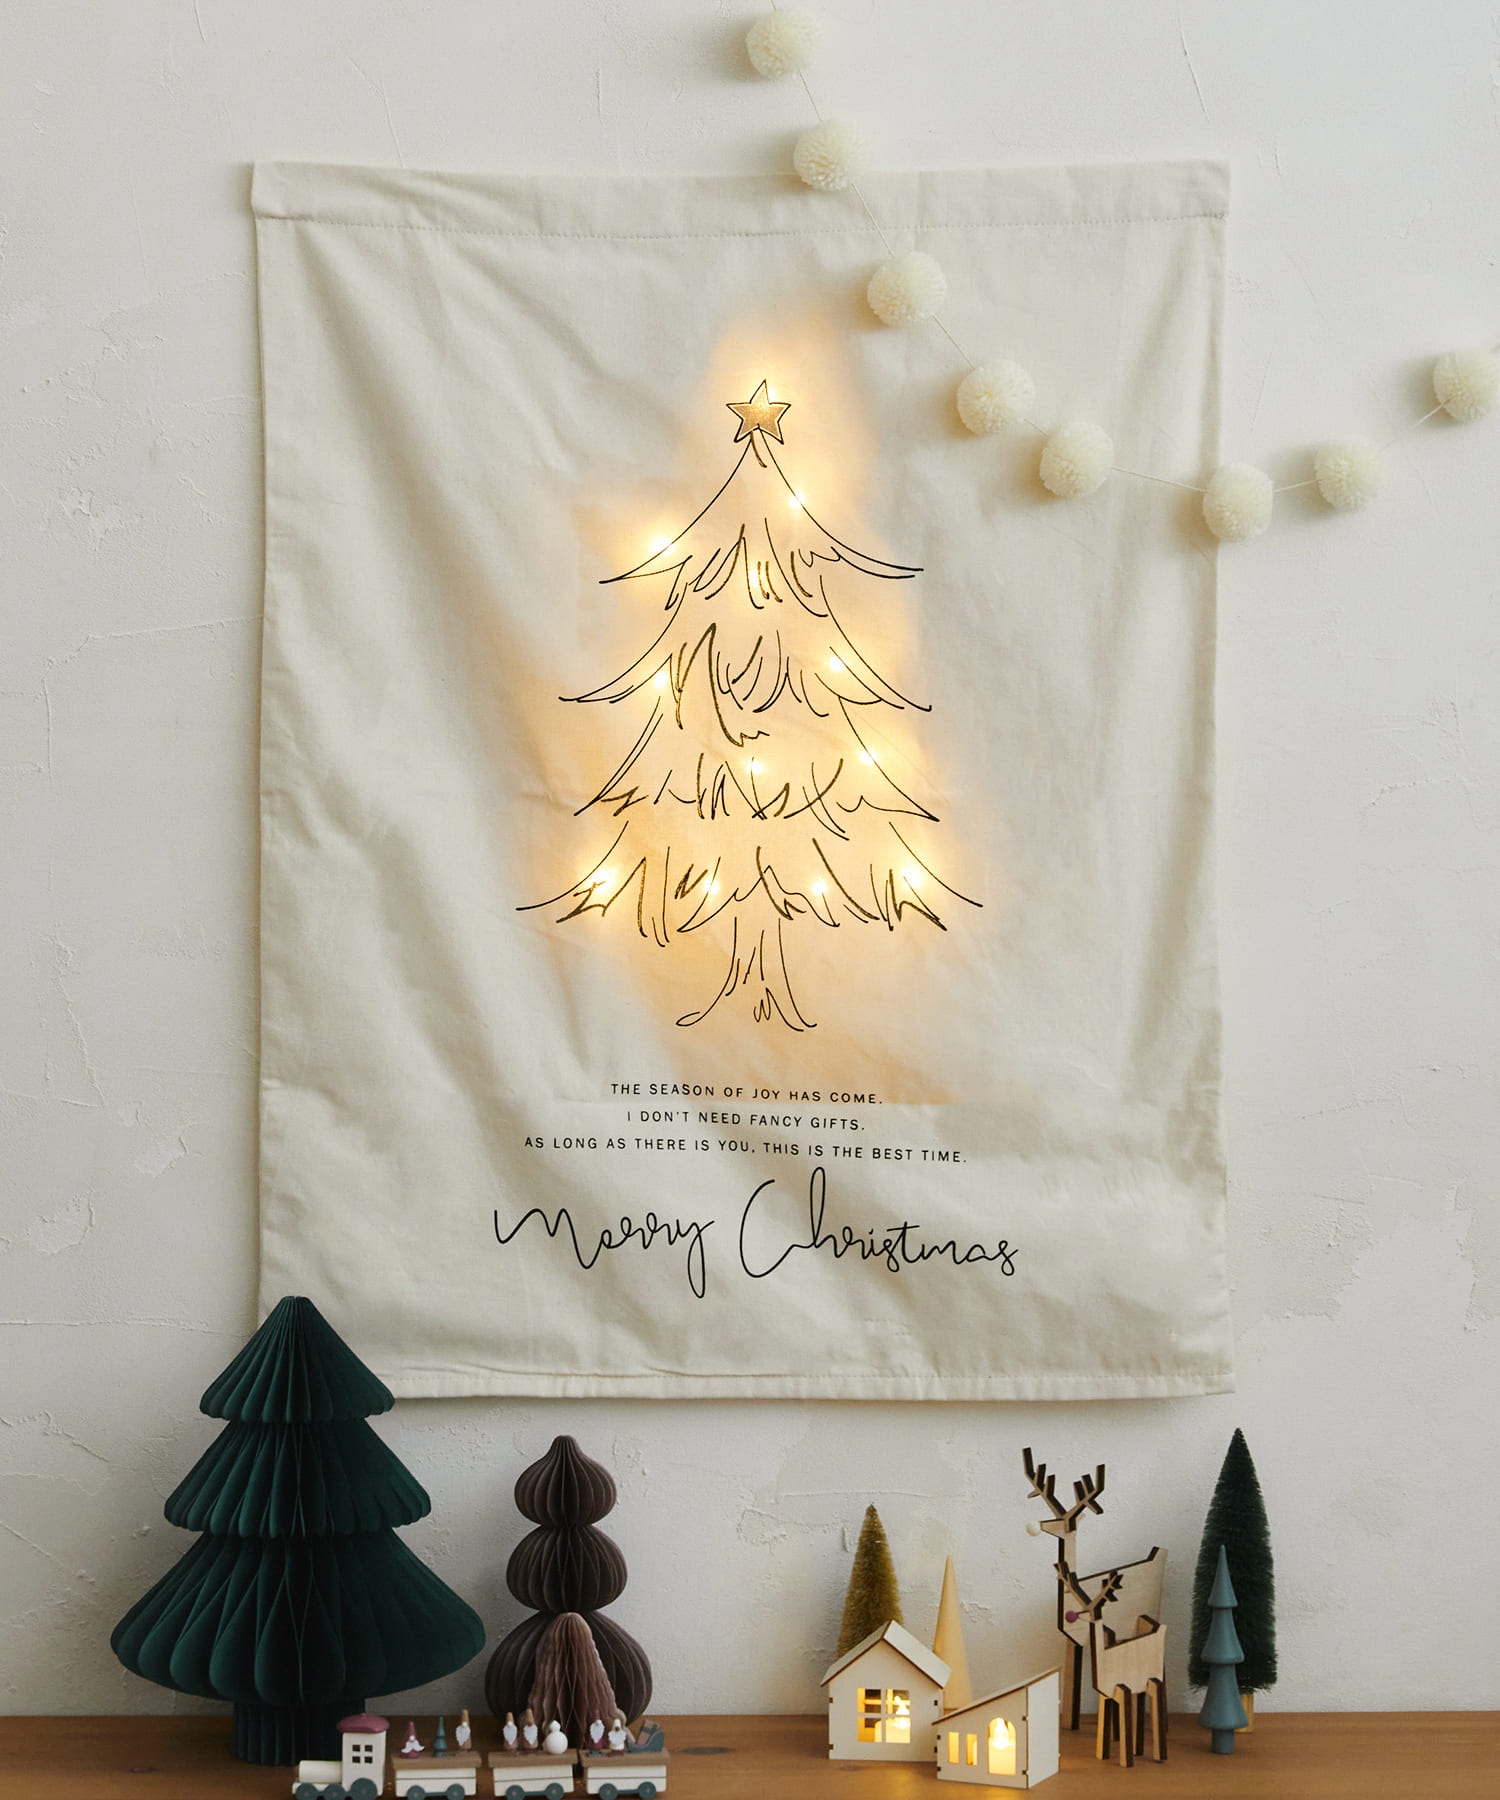 クリスマス オーナメント 装飾 飾り付け ツリー フォトフロップス 3COINS